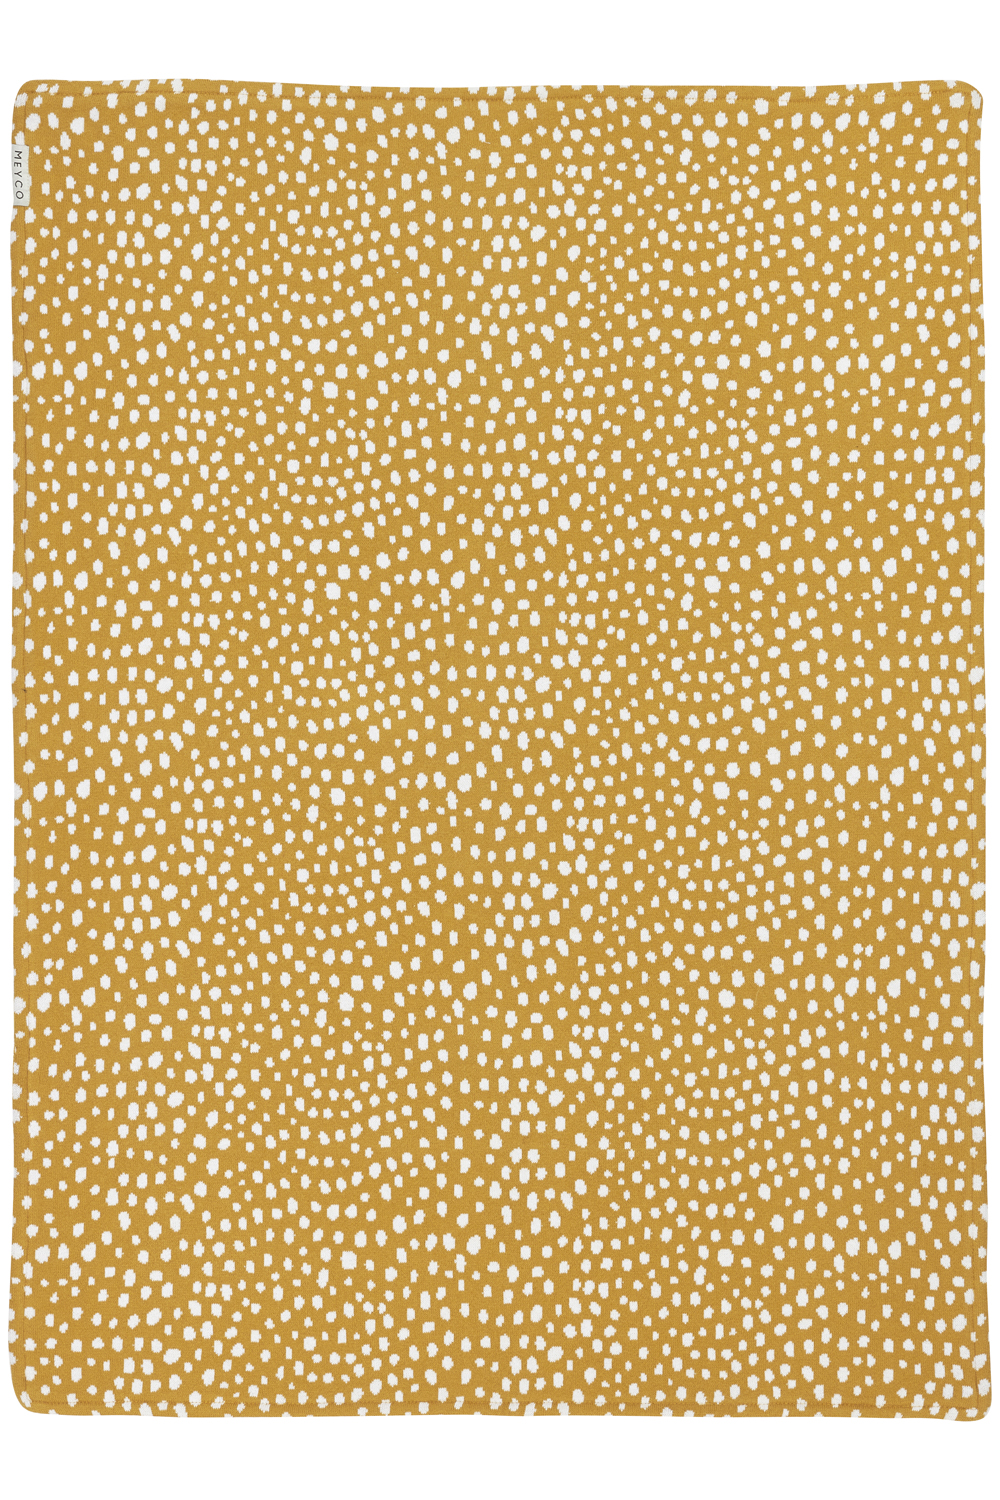 Wiegdeken Velvet Cheetah - Honey Gold - 75x100cm